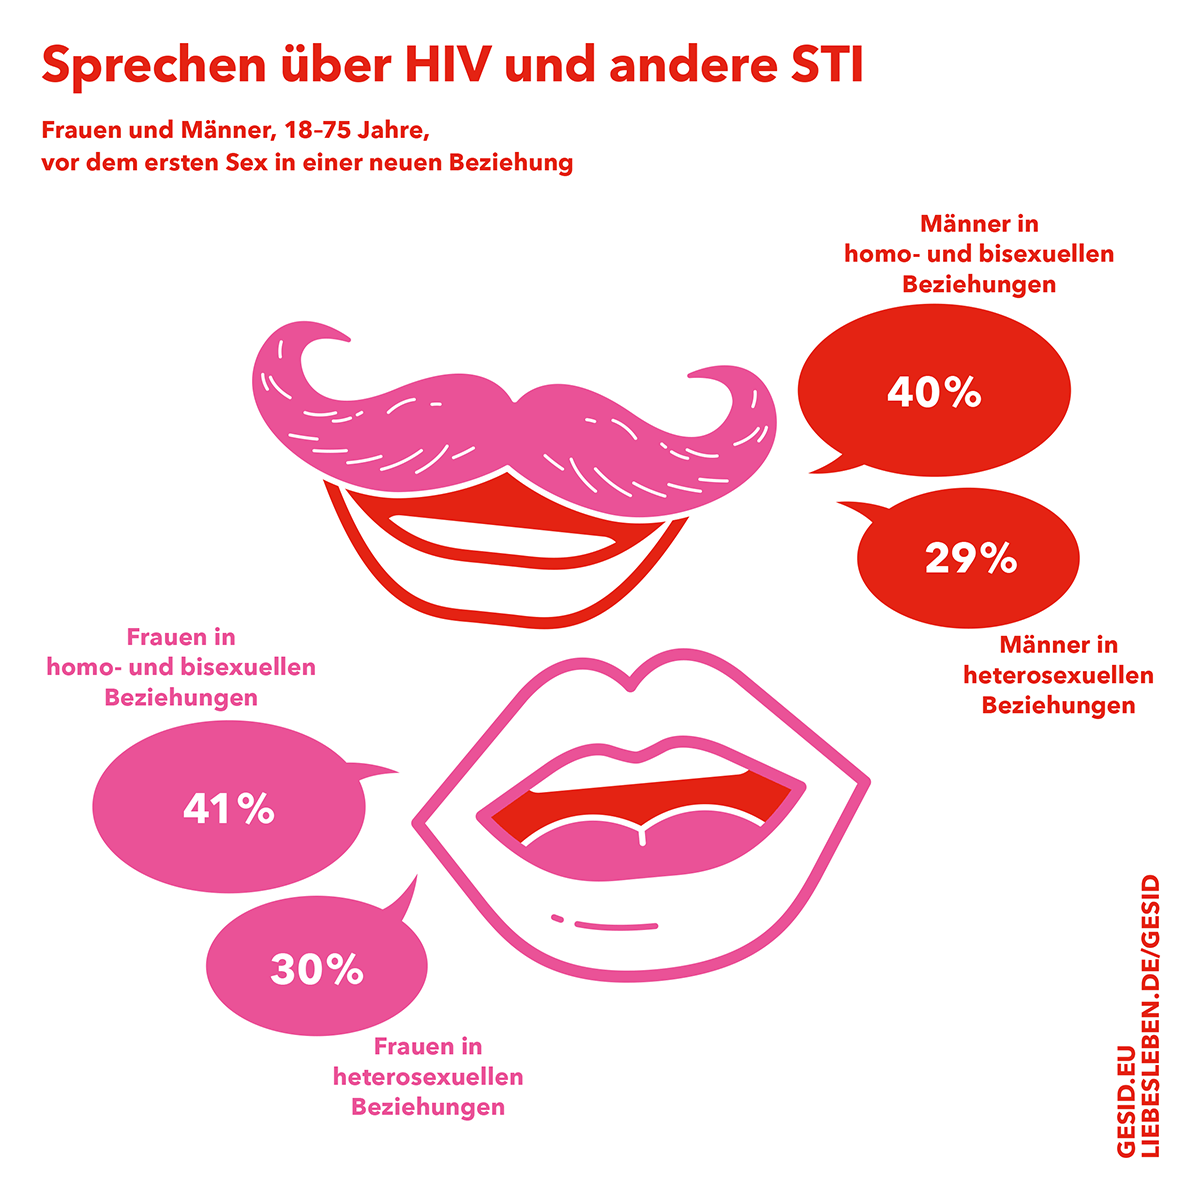 Sprechen über HIV und andere STI. Frauen und Männer, 18-75 Jahre, vor dem ersten Sex in einer neuen Beziehung. (Weitere Infos im nachfolgenden Text)